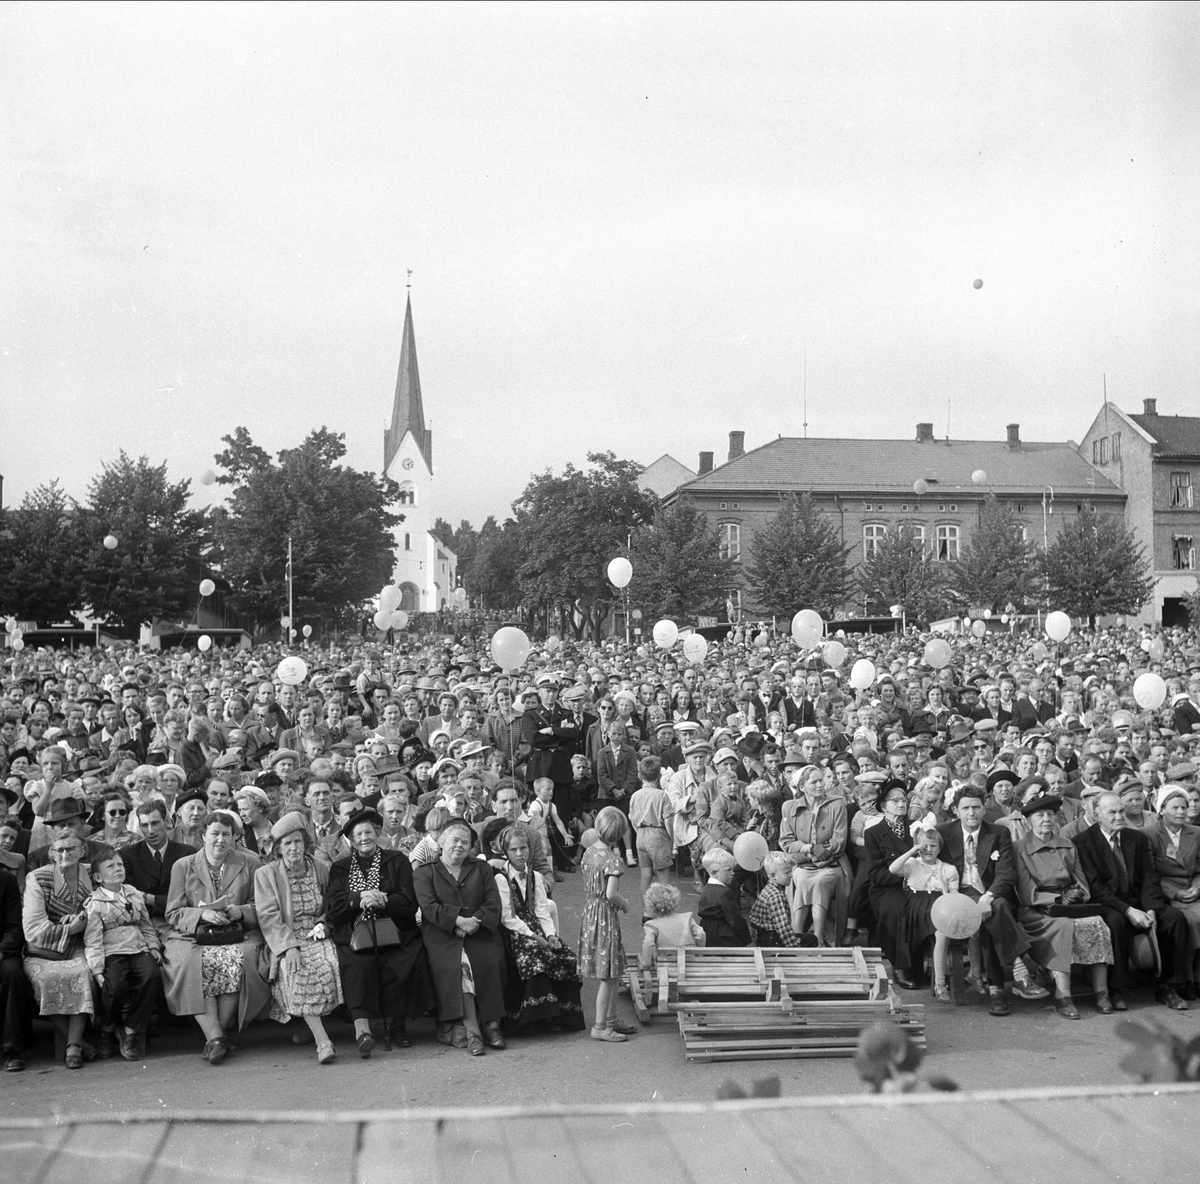 Hamardagen, 23.08.1954. Tilskuere foran scene. Hamar Domkirke i bakgrunnen.